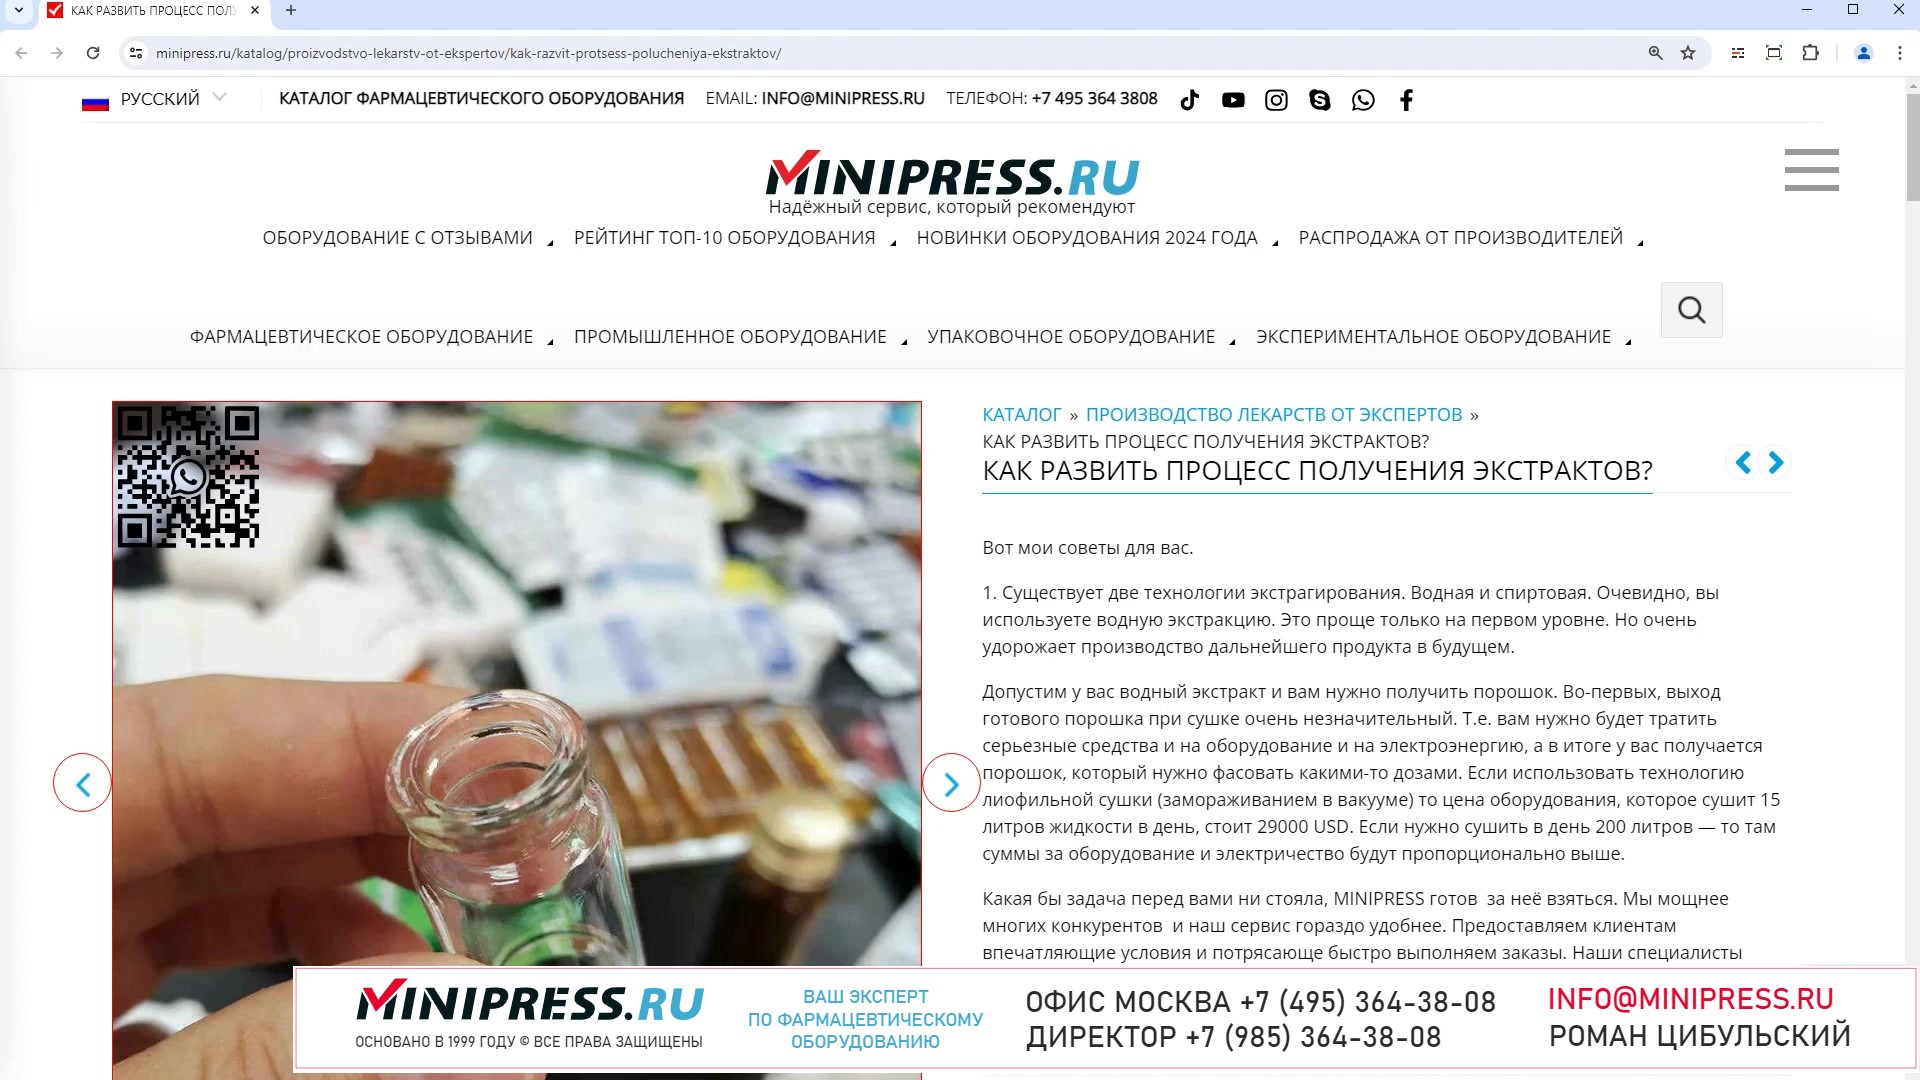 Minipress.ru Как развить процесс получения экстрактов